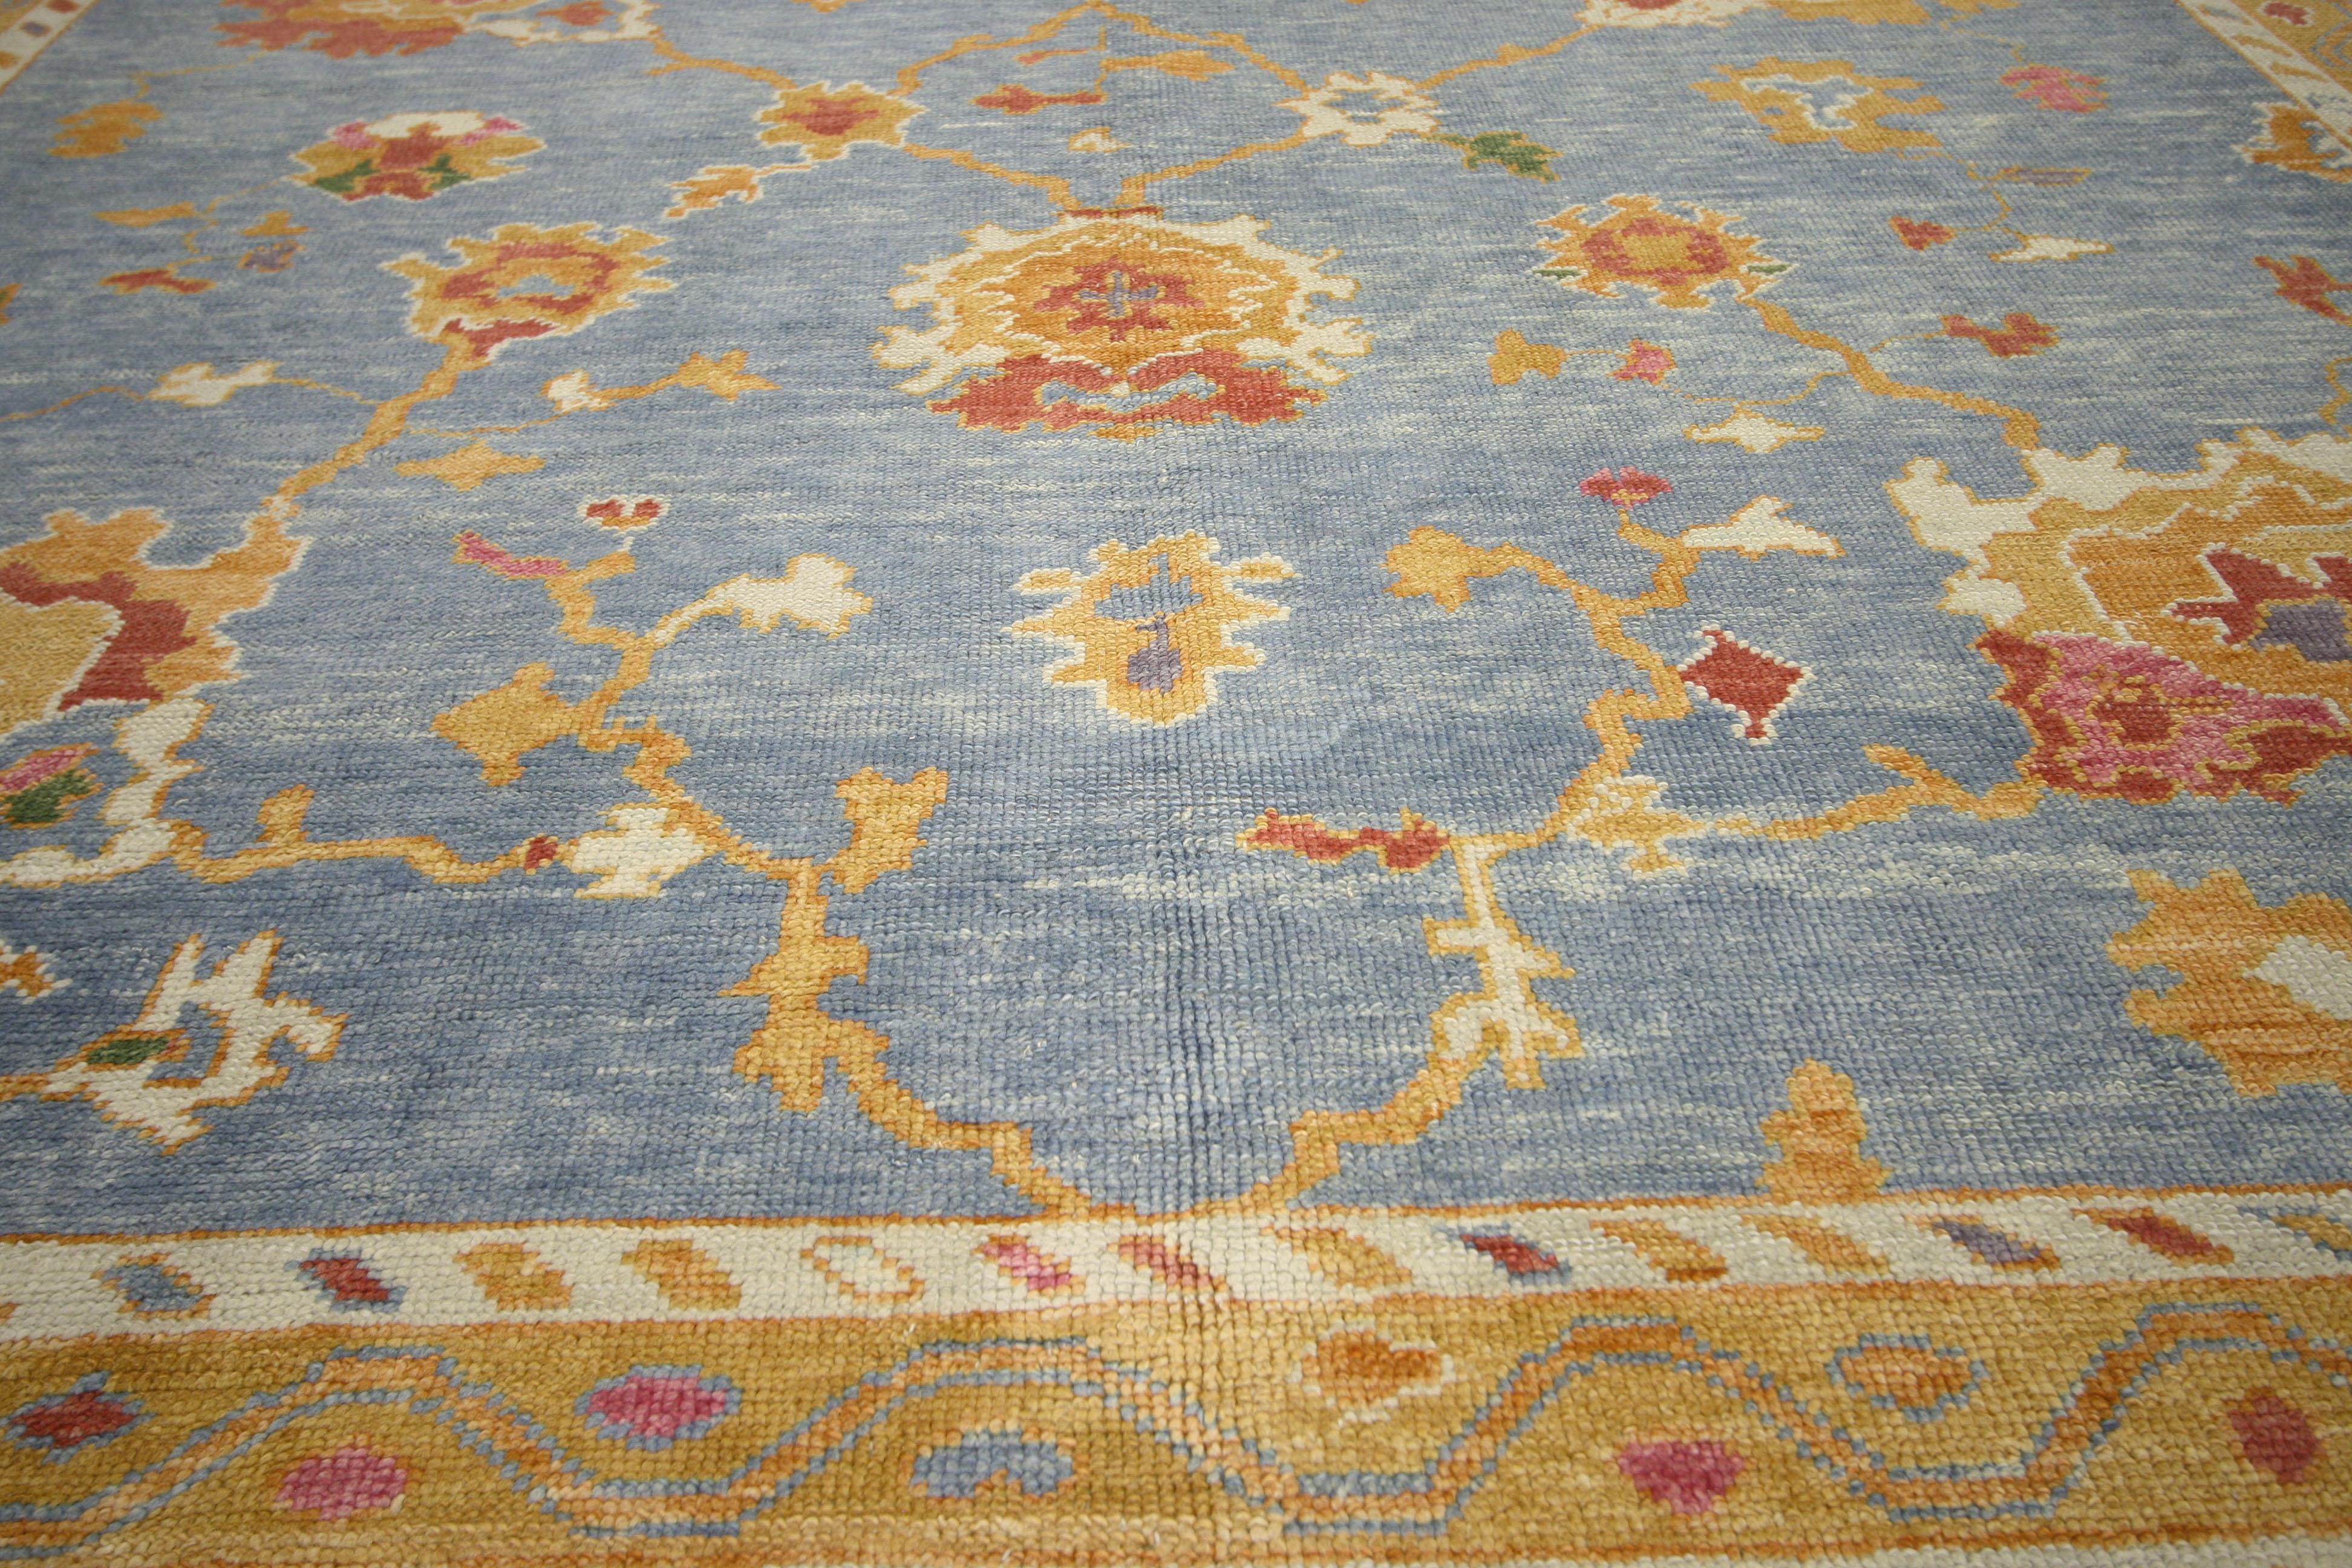 52381, Nouveau tapis contemporain turc Oushak au style moderne et côtier. Ce tapis turc contemporain Oushak en laine nouée à la main présente un motif floral ensoleillé qui s'étend sur un champ céruléen doux et abrasif. De grandes palmettes